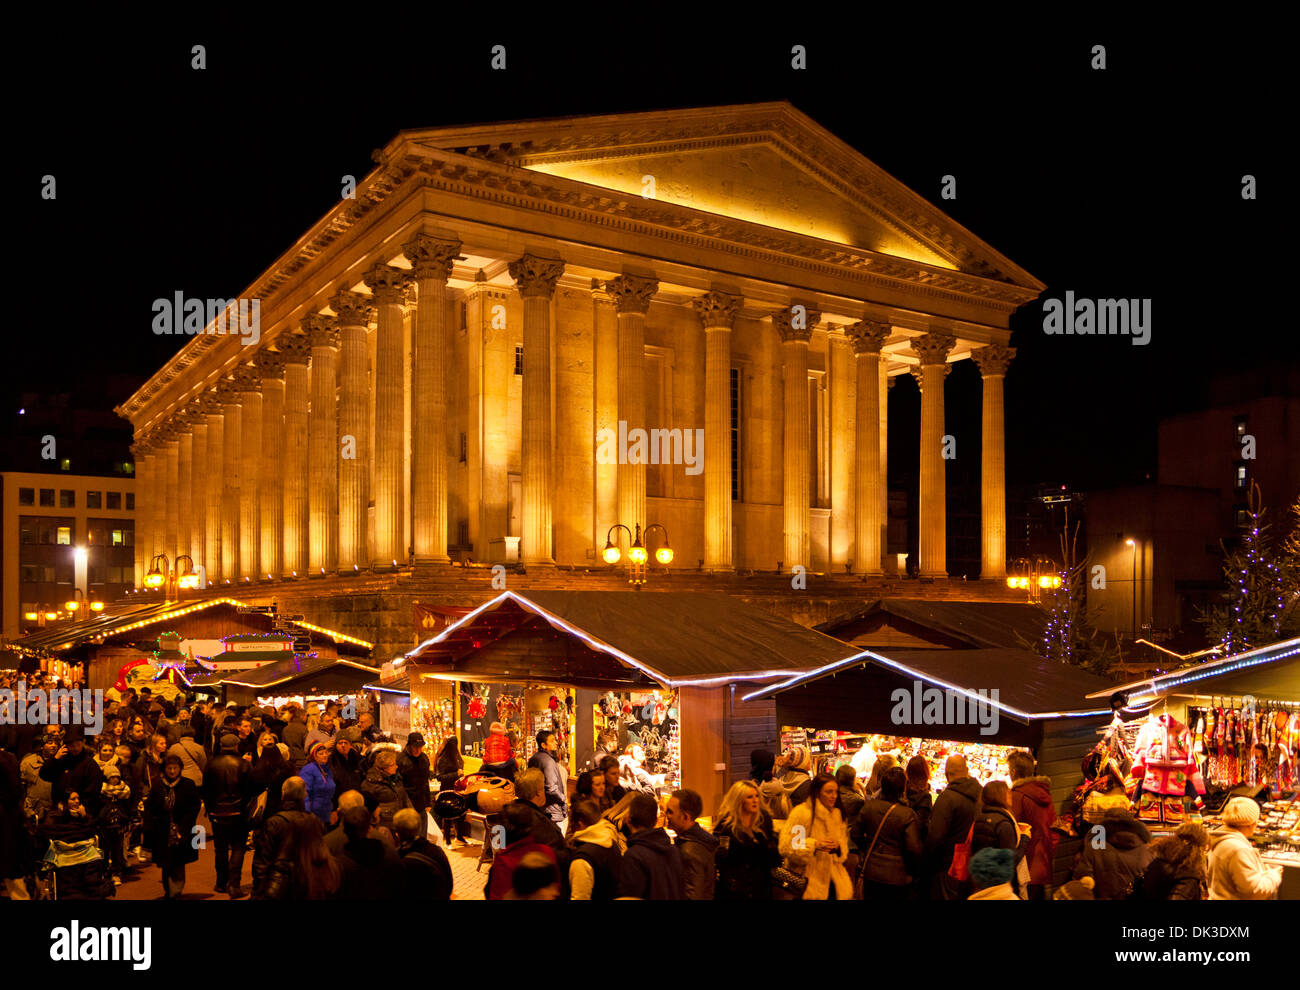 Marché de Noël de Birmingham aussi connu sous le nom de marché de noël de Francfort Birmingham Birmingham West Midlands England UK GB EU Europe Banque D'Images